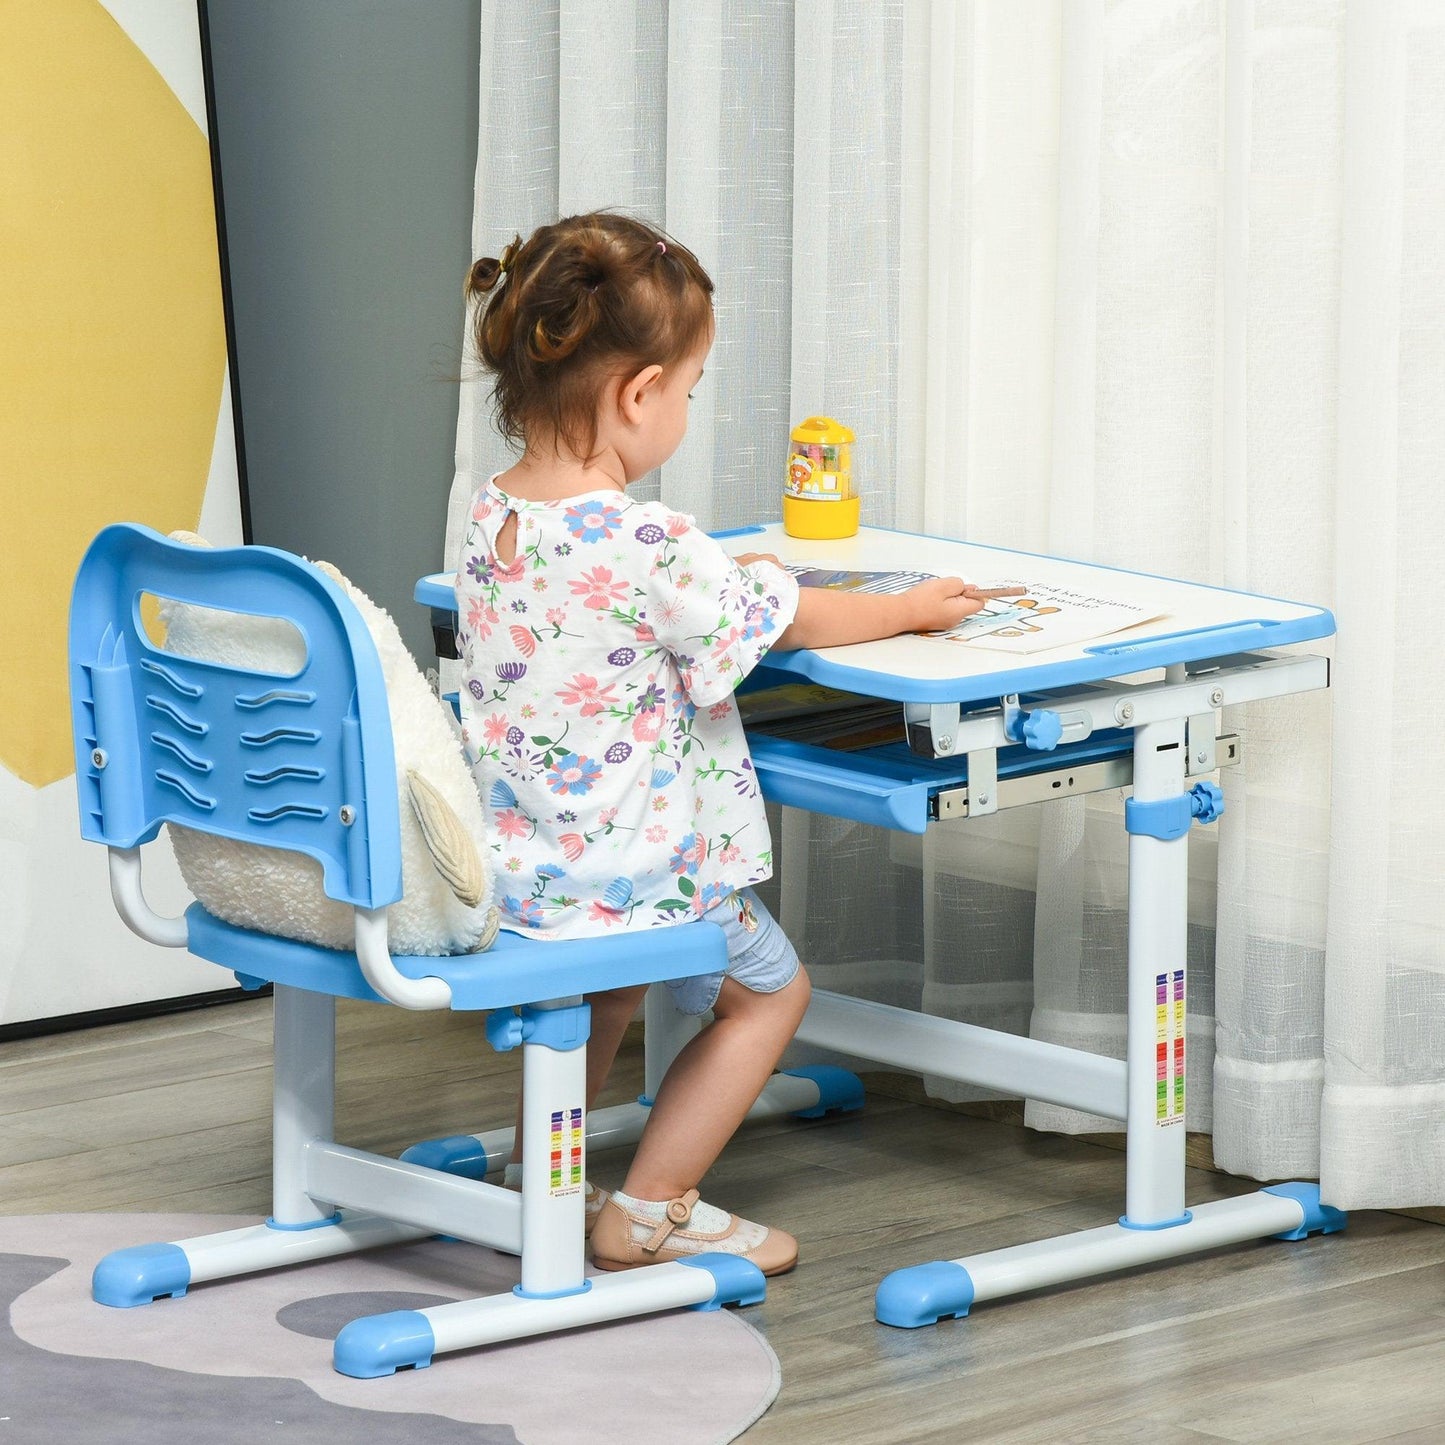 HOMCOM Adjustable Kids Desk & Chair Set with Tiltable Desktop – Blue - ALL4U RETAILER LTD